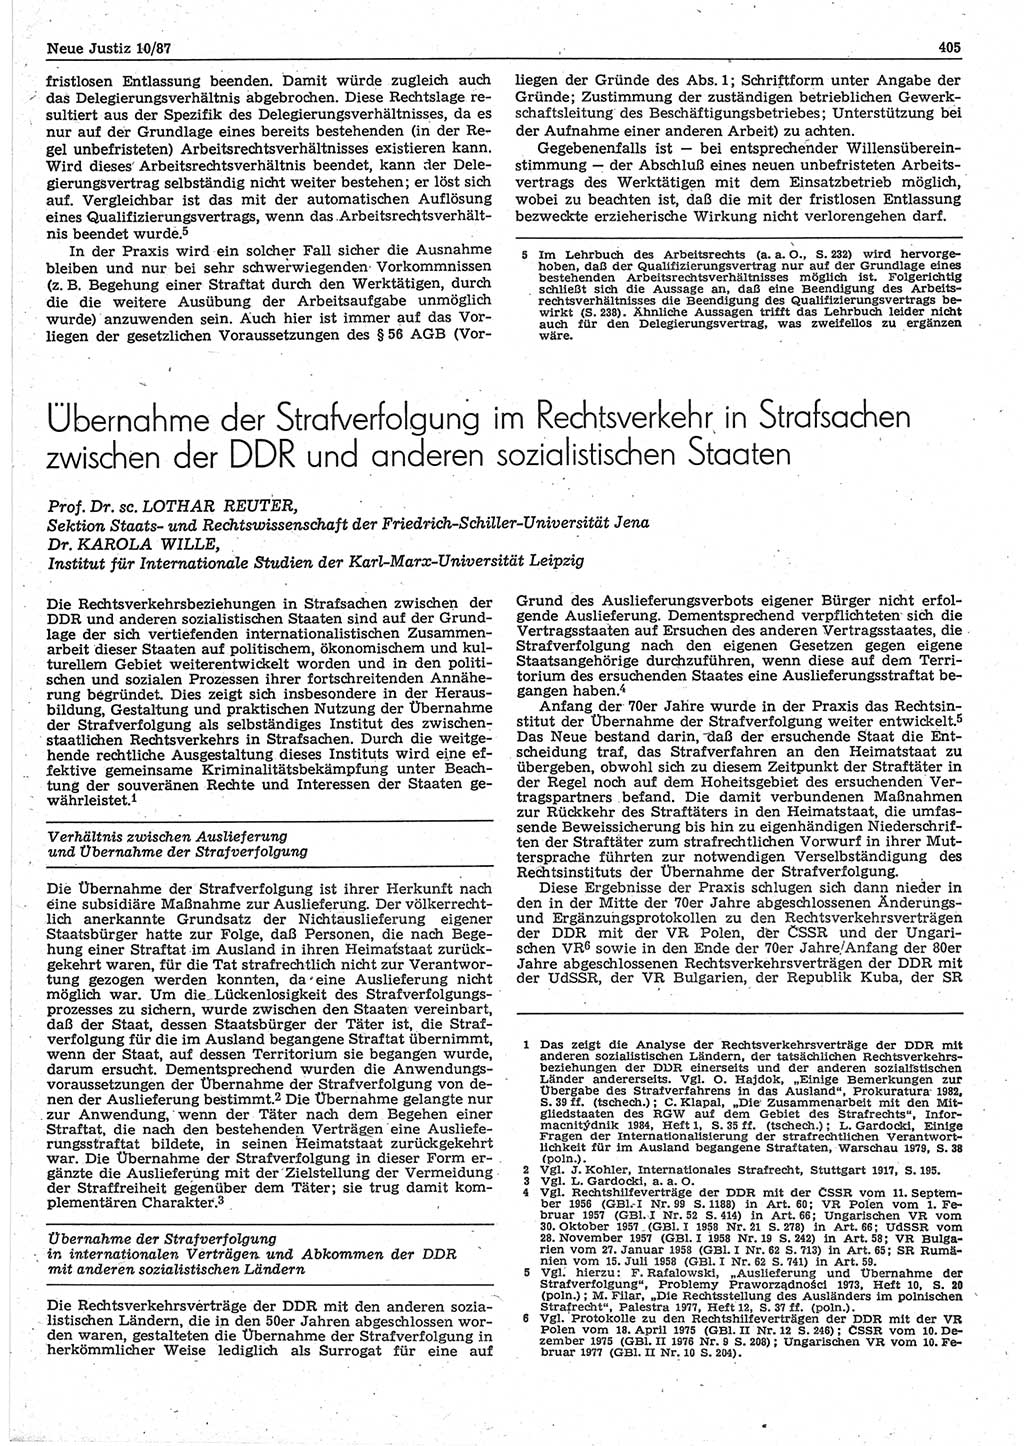 Neue Justiz (NJ), Zeitschrift für sozialistisches Recht und Gesetzlichkeit [Deutsche Demokratische Republik (DDR)], 41. Jahrgang 1987, Seite 405 (NJ DDR 1987, S. 405)